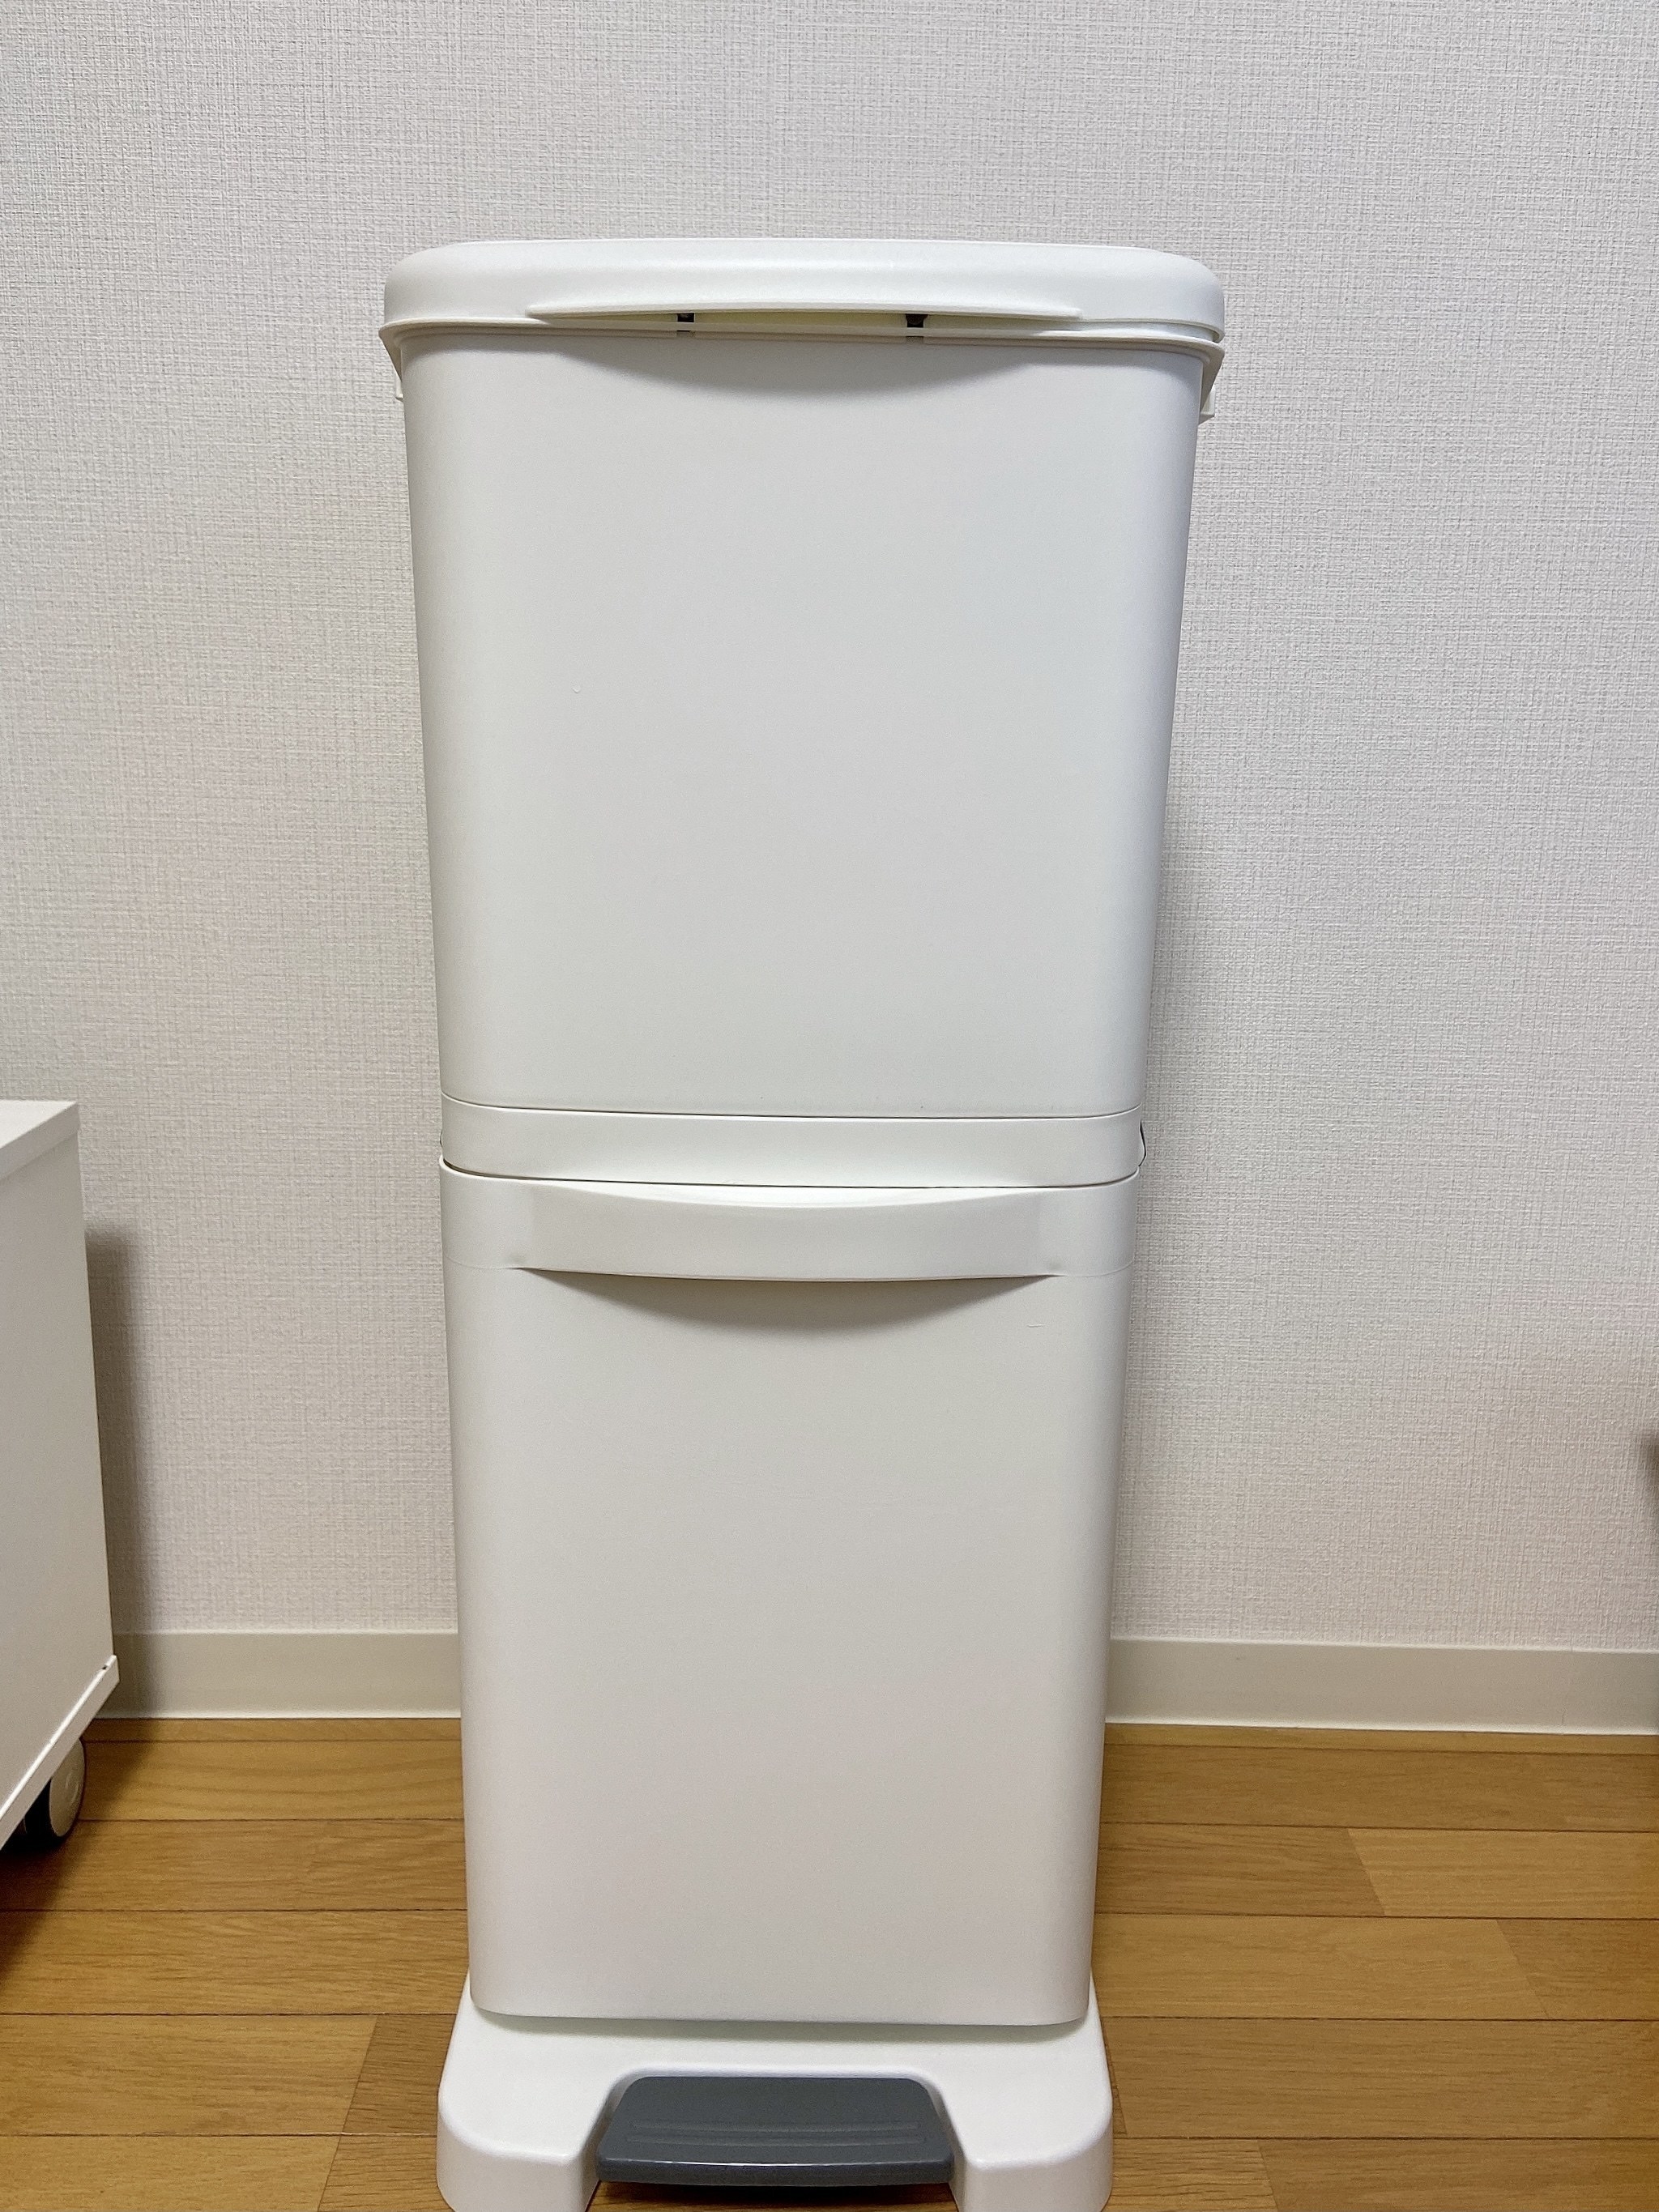 IKEA（イケア）の便利アイテム「GÖRBRA ヨーブラ」スタイリッシュで大容量なのでゴミ箱を探している方におすすめ